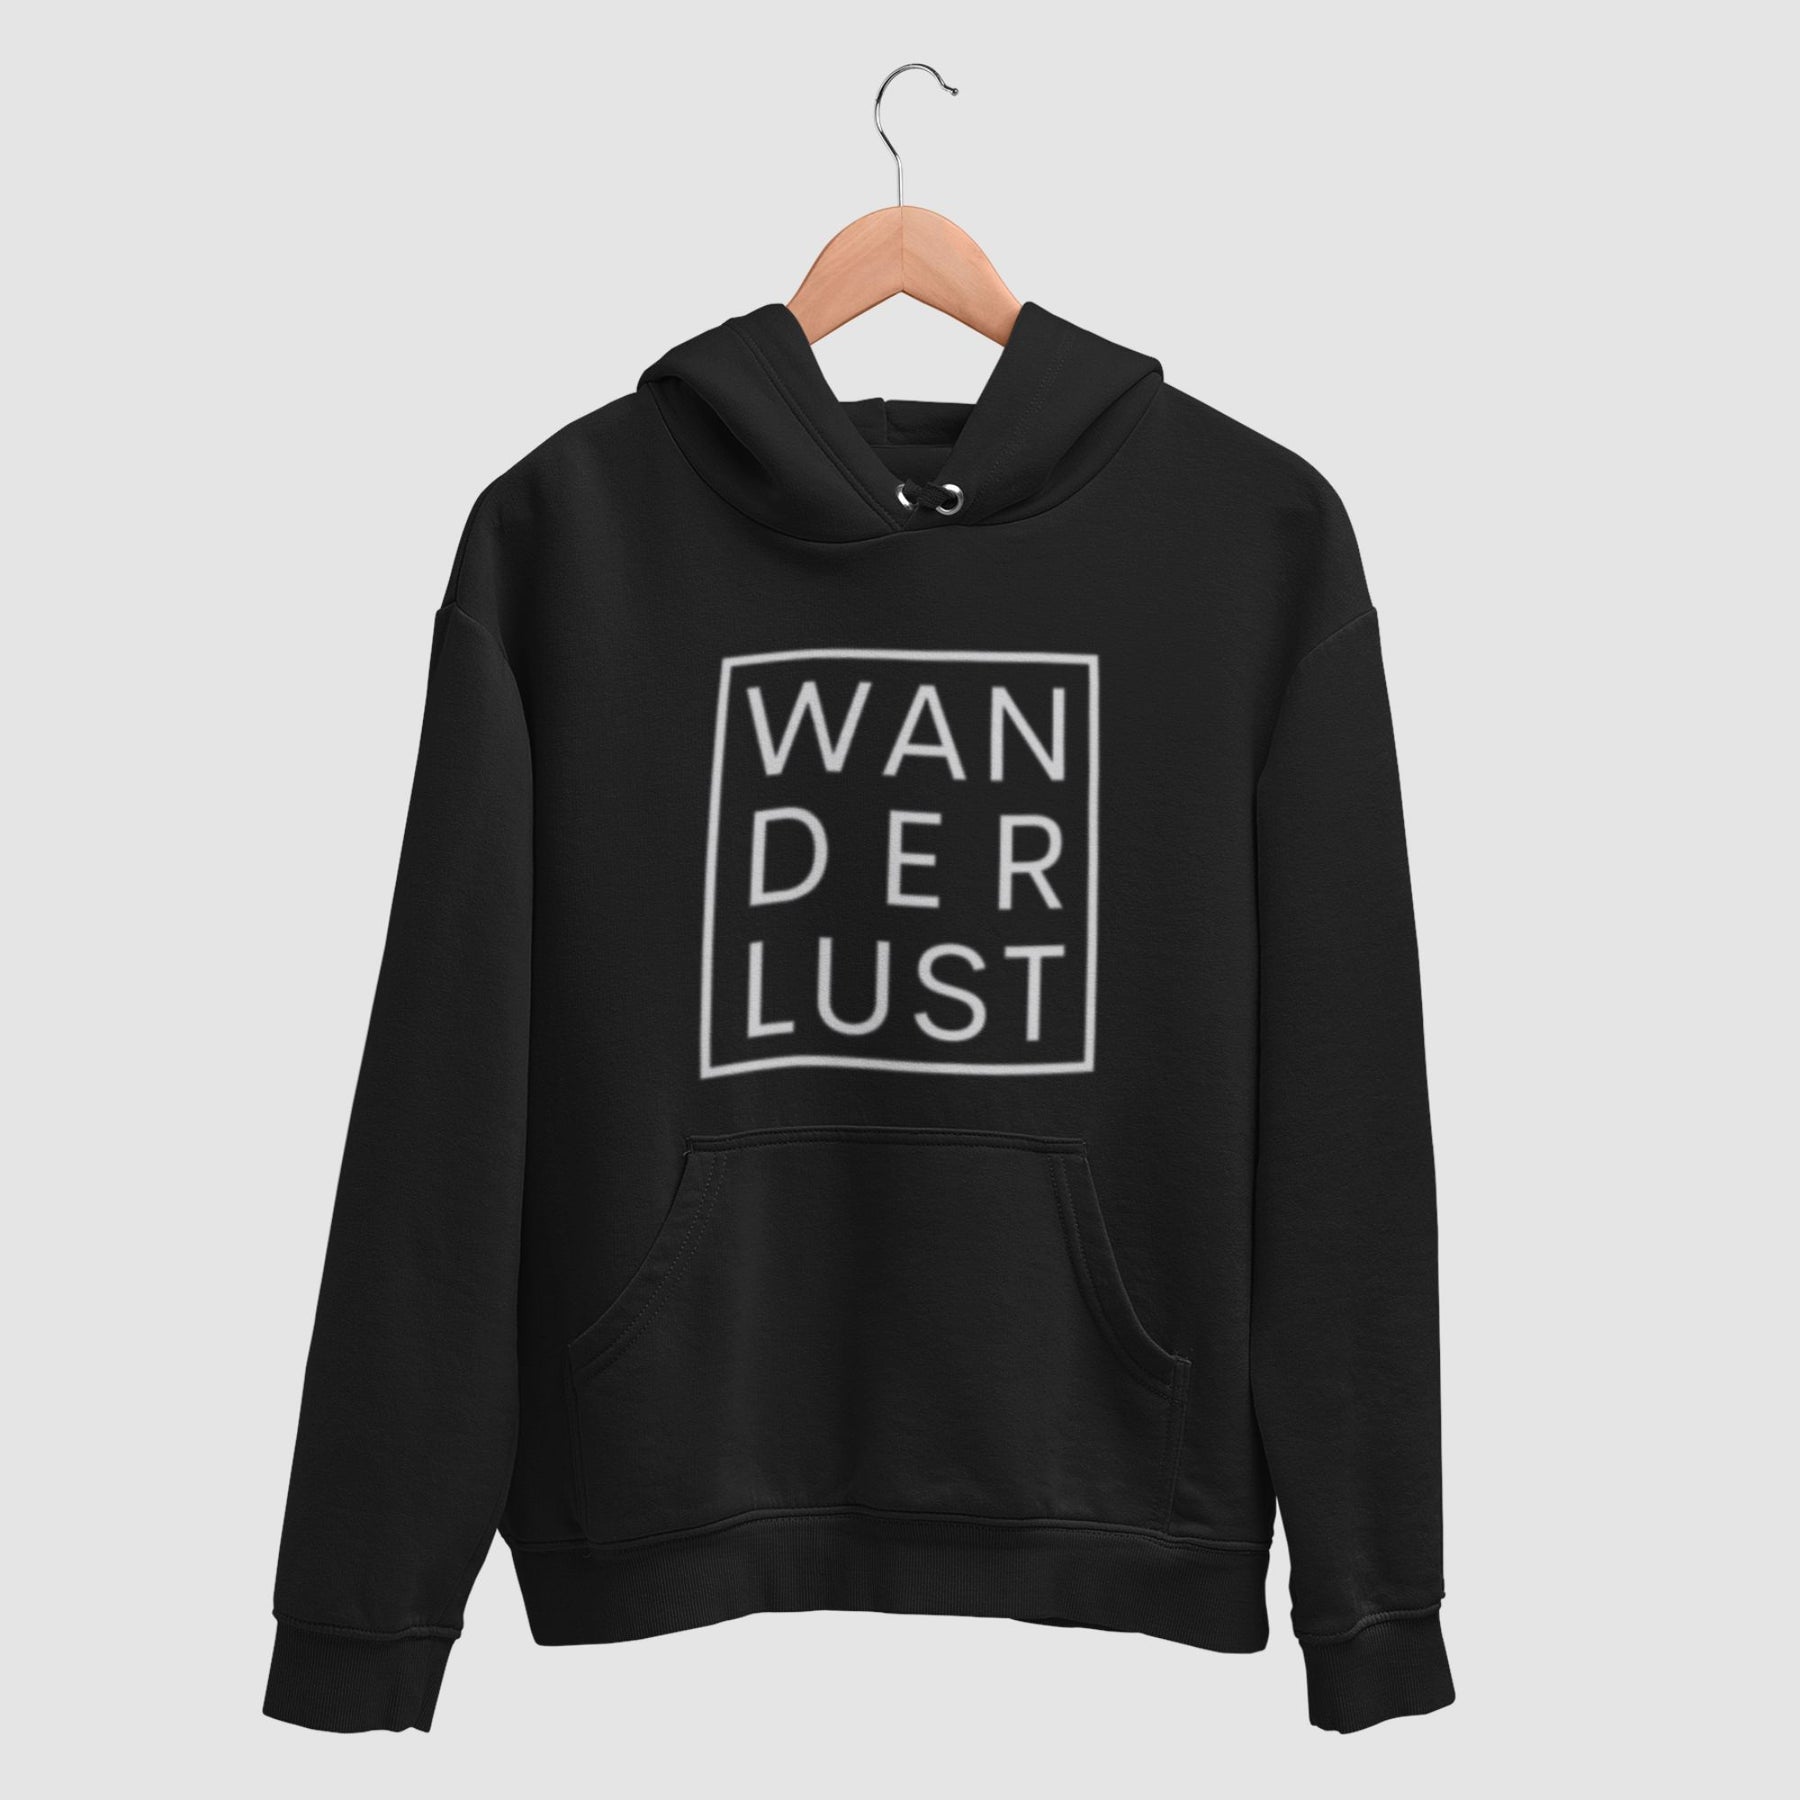    wonder-lust-black-printed-unisex-hanging-hoodie-gogirgit-com